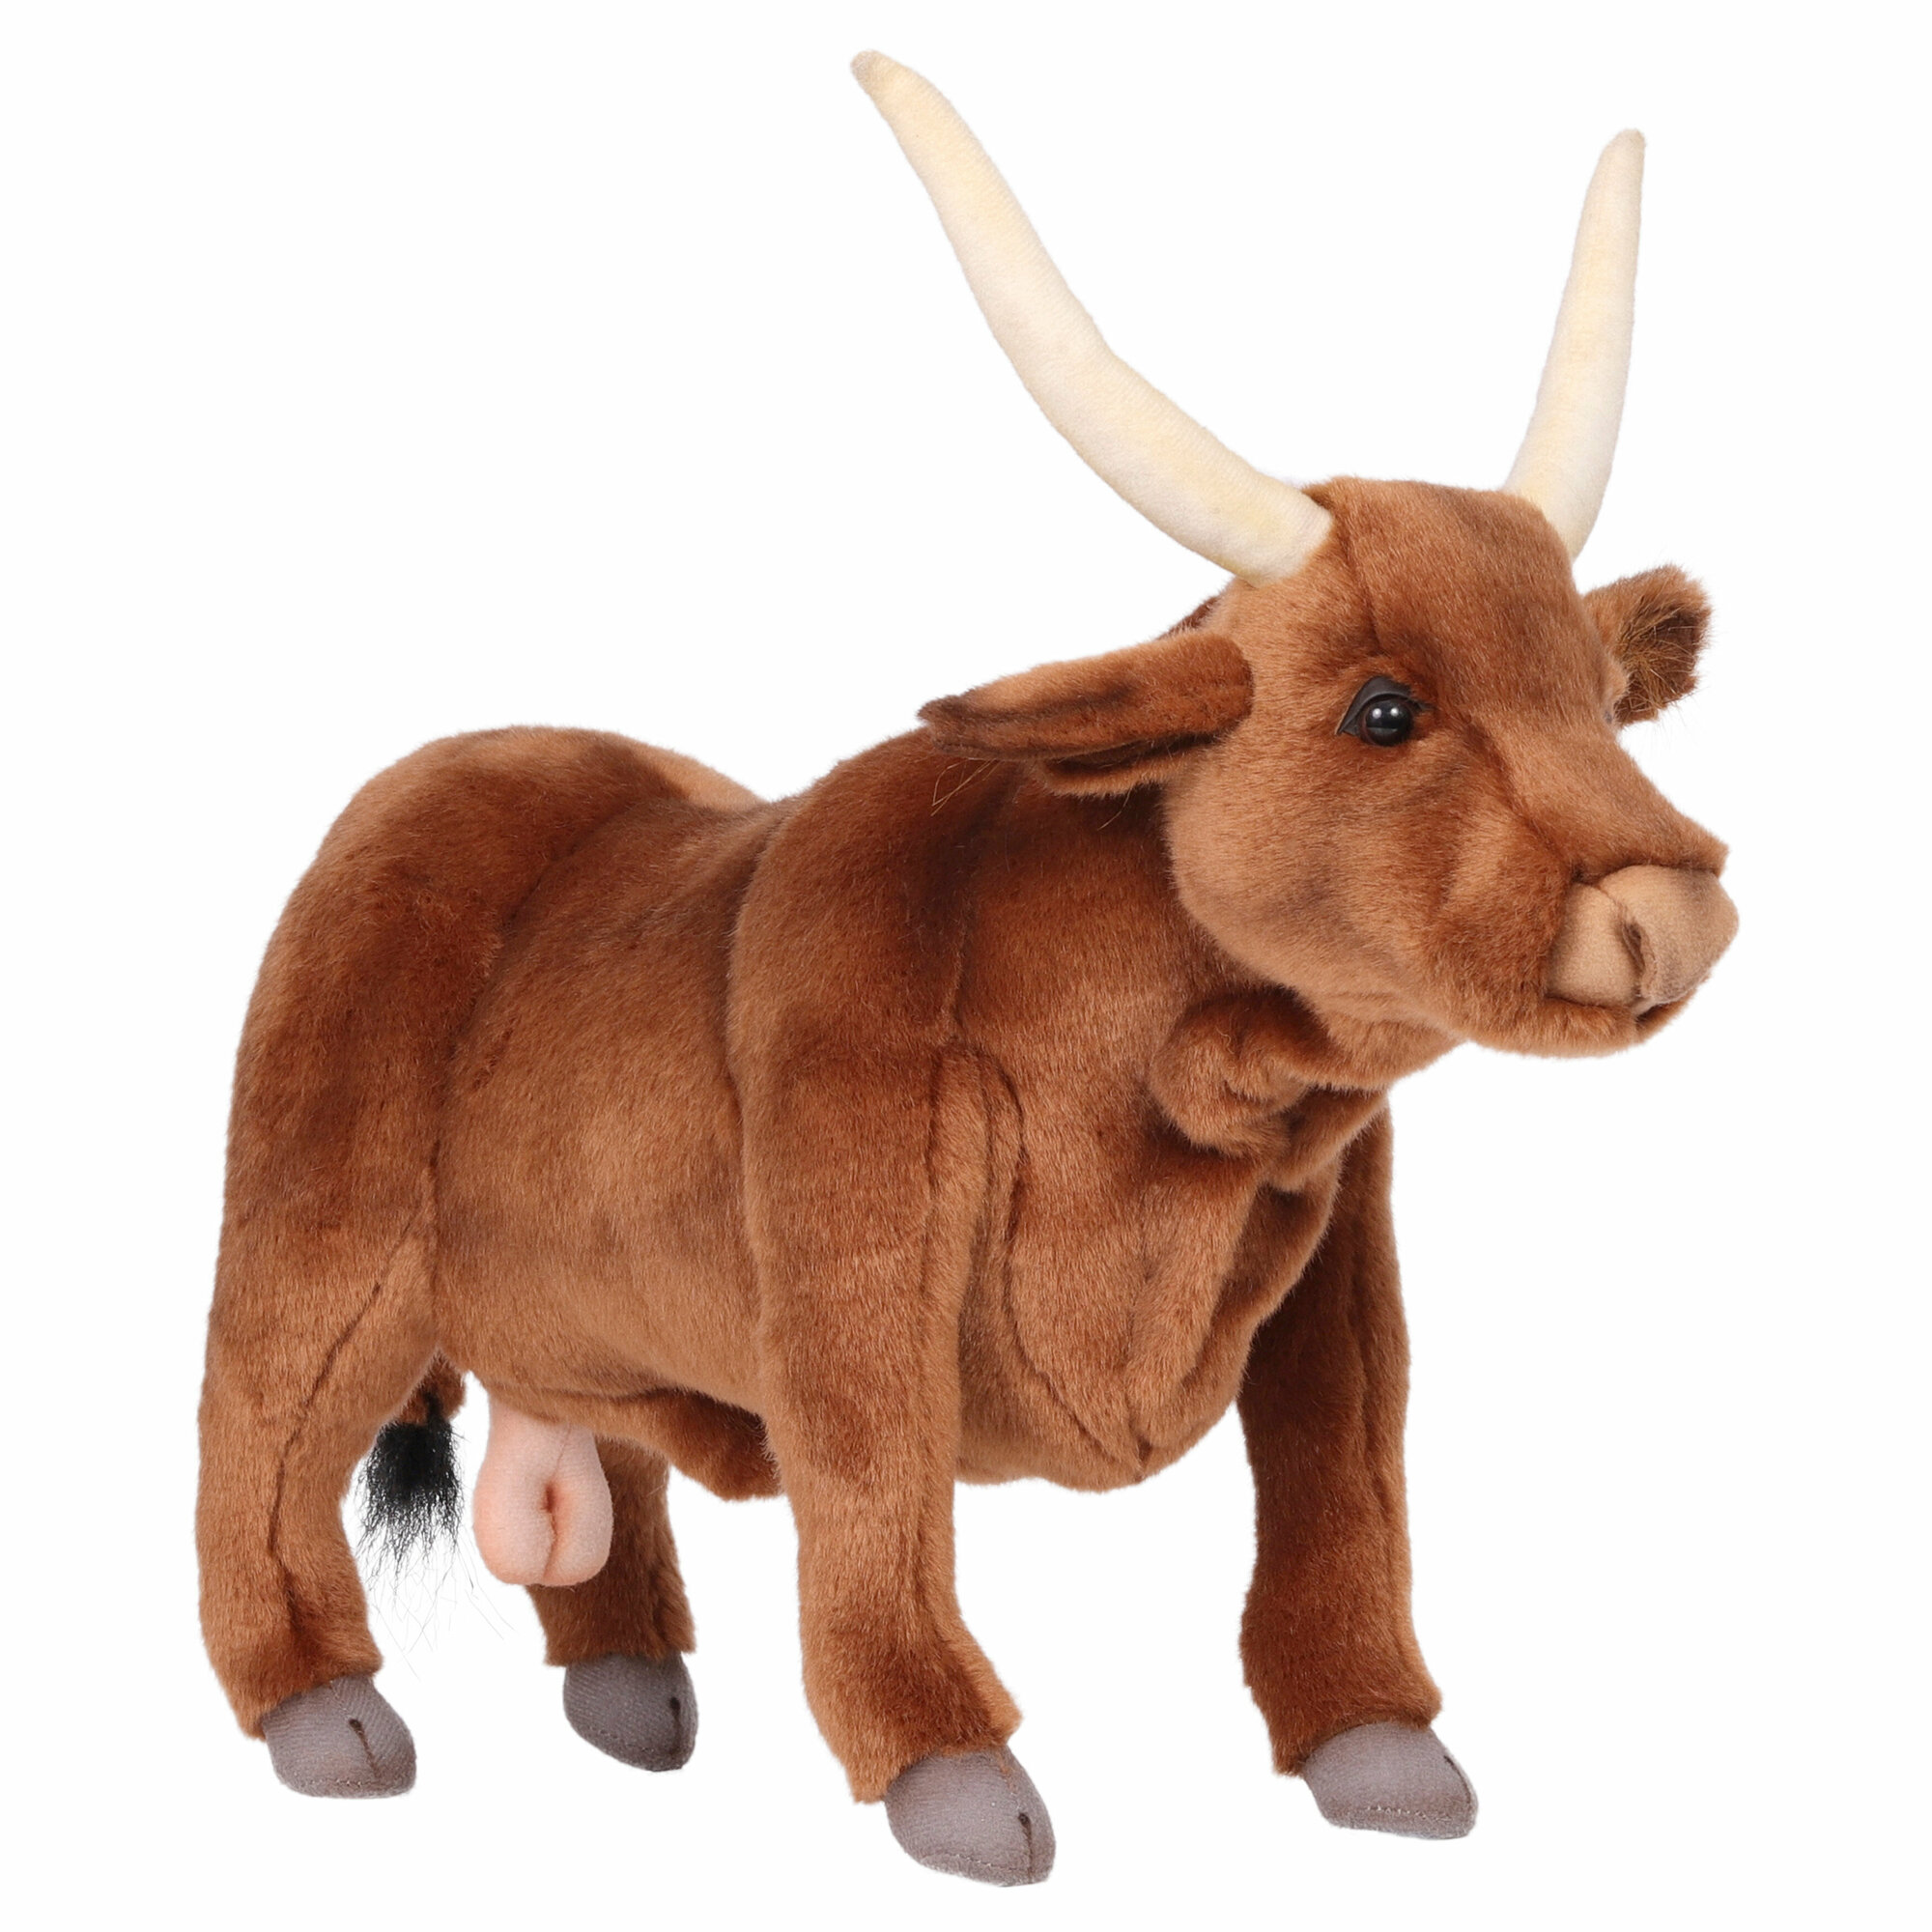 Реалистичная мягкая игрушка Hansa Creation, 4630 Бык, коричневый, 37 см